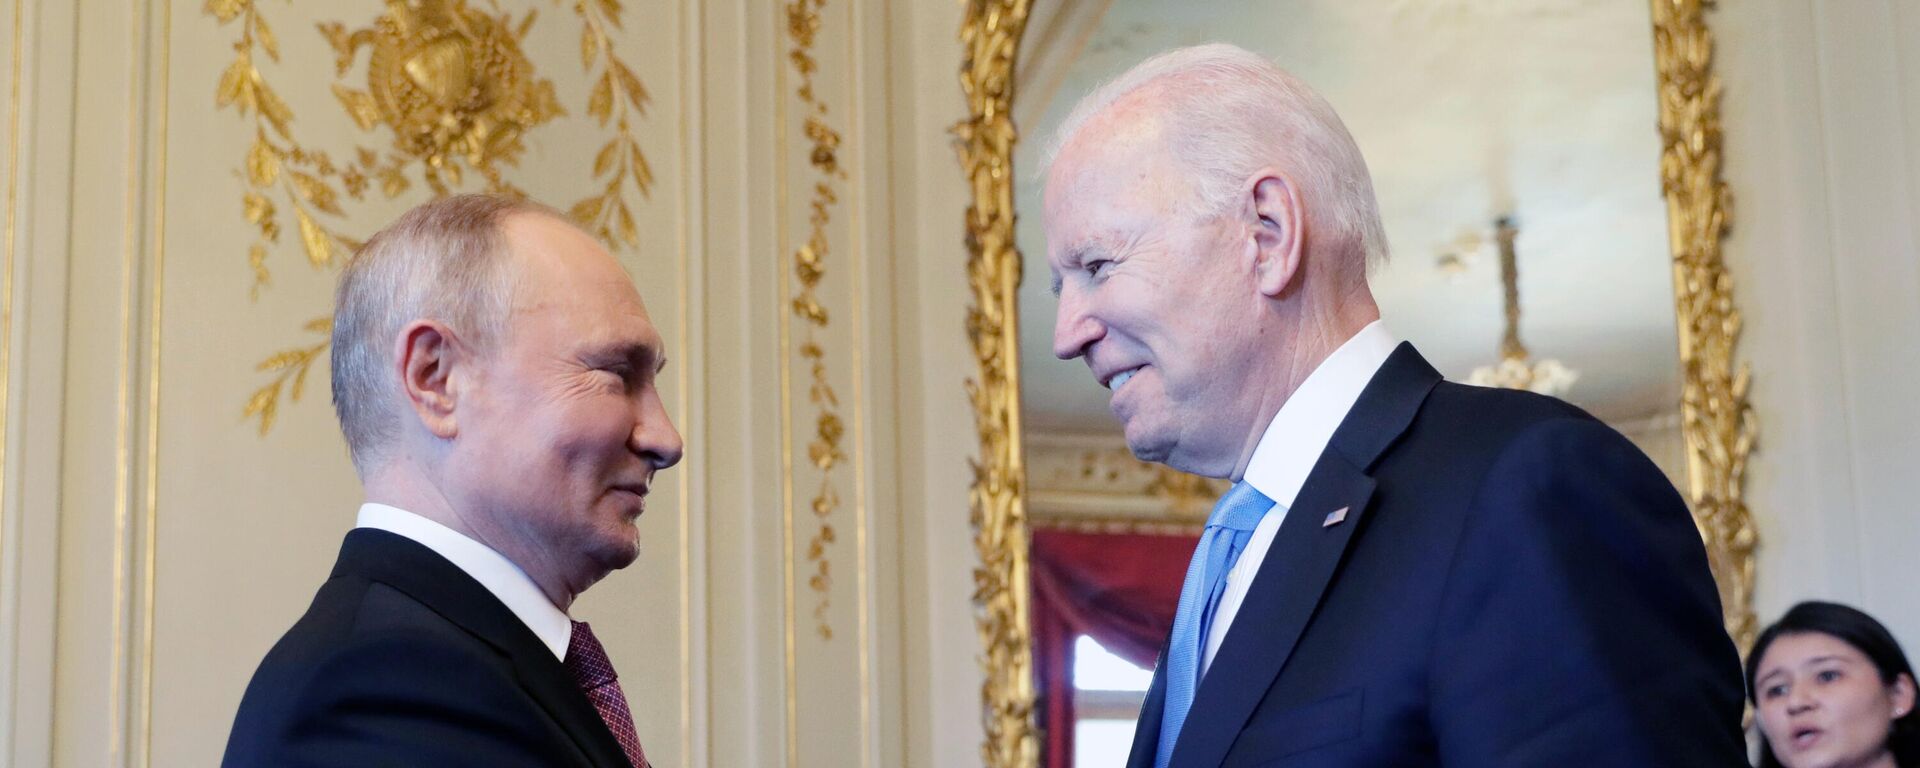 Vladímir Putin, presidente de Rusia, y Joe Biden, presidente de EEUU - Sputnik Mundo, 1920, 16.06.2021